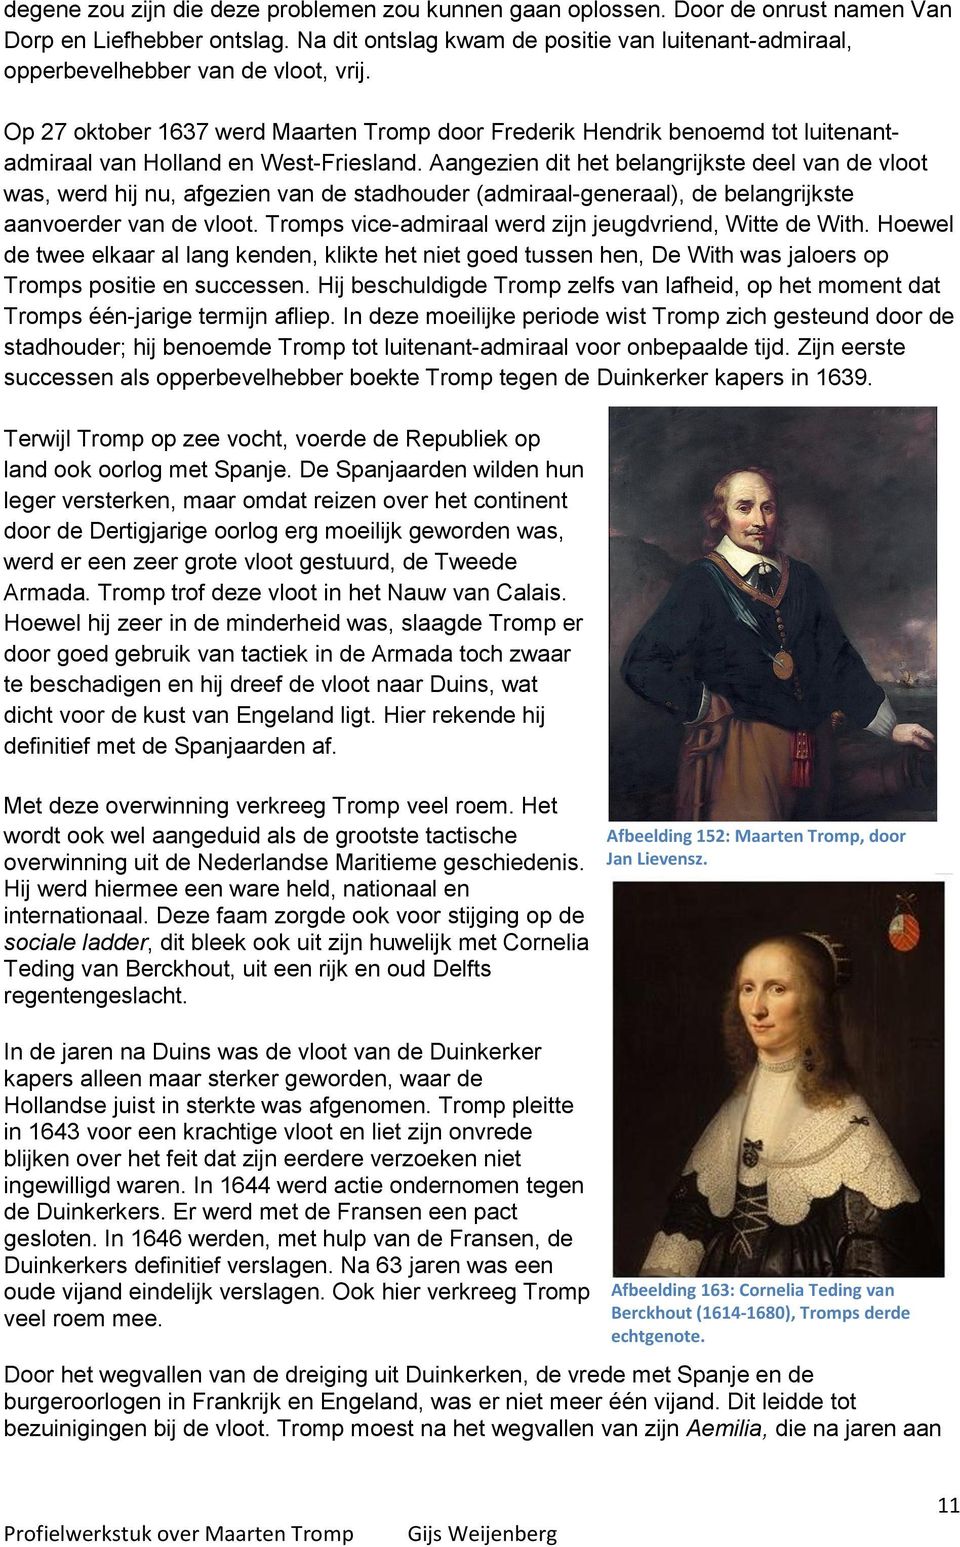 Op 27 oktober 1637 werd Maarten Tromp door Frederik Hendrik benoemd tot luitenantadmiraal van Holland en West-Friesland.